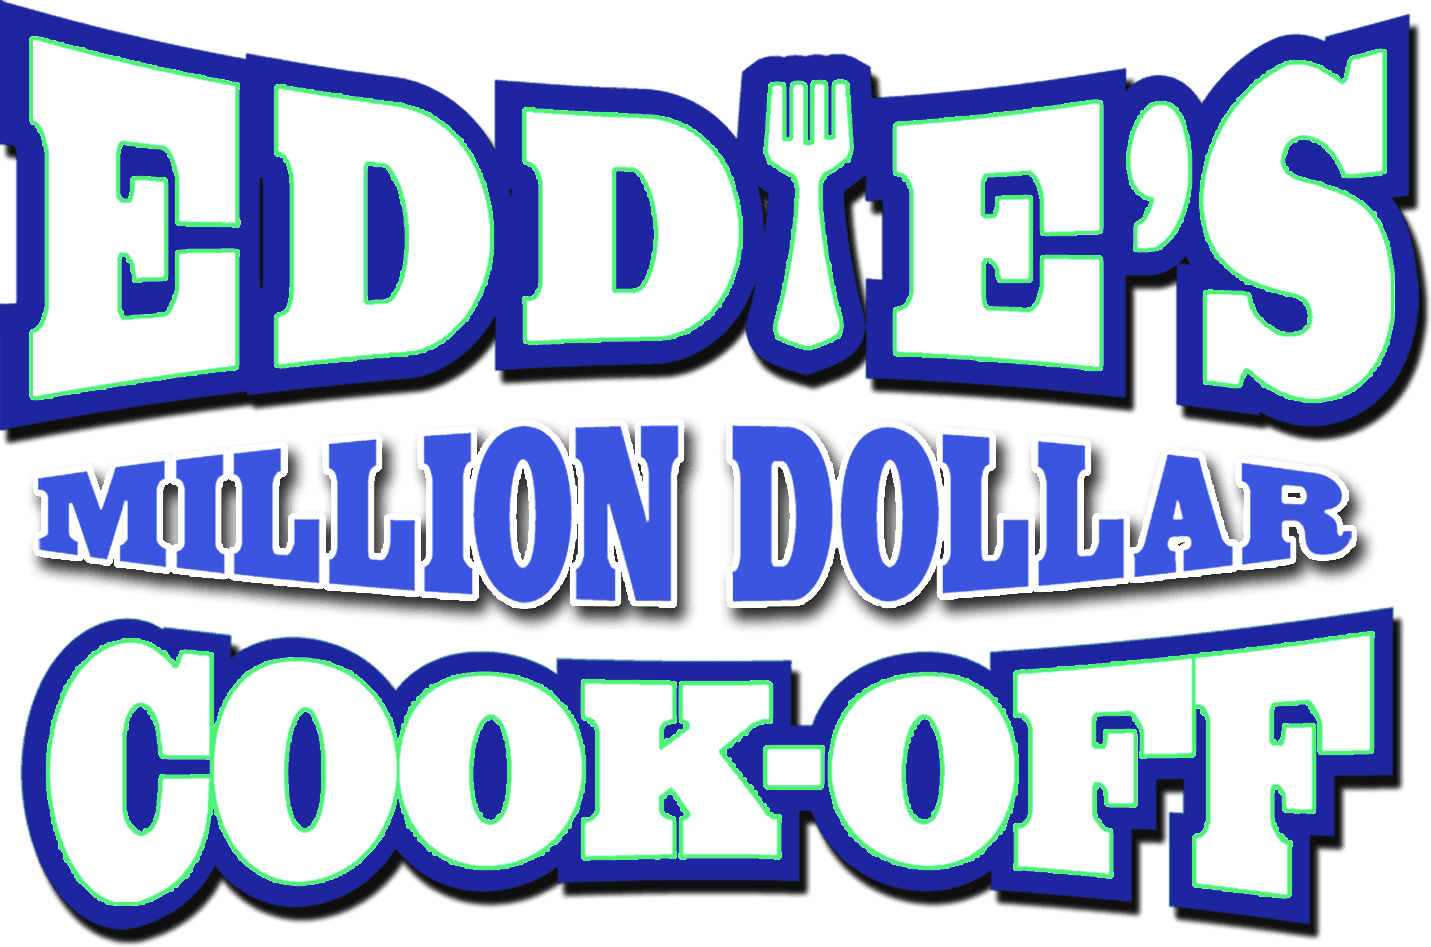 Eddie's Million Dollar Cook Off logo